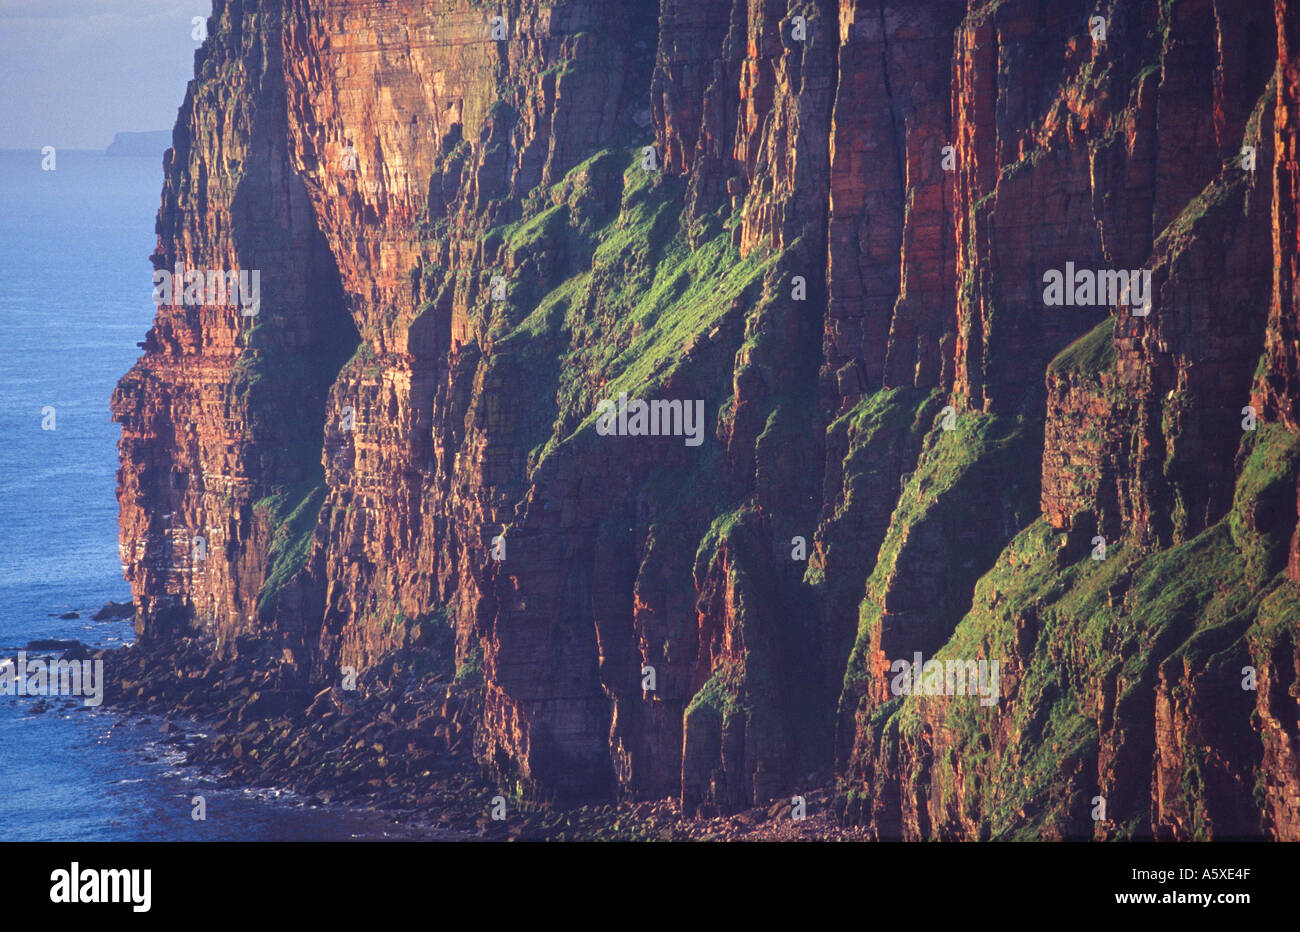 Les falaises de St John's Head, Hoy, îles Orkney, Ecosse Banque D'Images